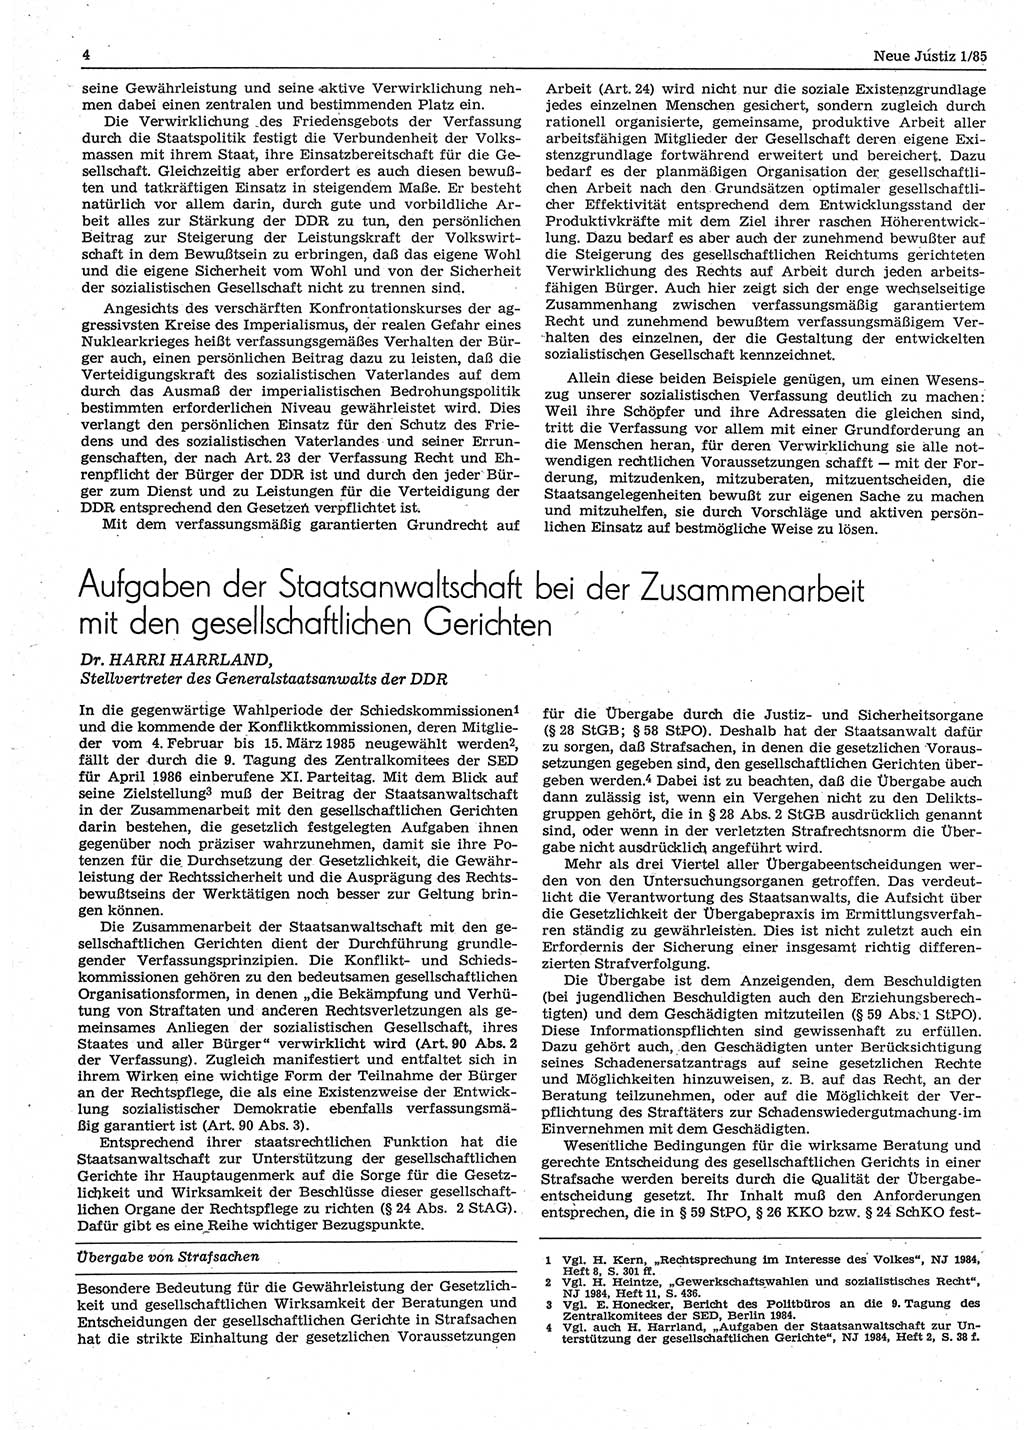 Neue Justiz (NJ), Zeitschrift für sozialistisches Recht und Gesetzlichkeit [Deutsche Demokratische Republik (DDR)], 39. Jahrgang 1985, Seite 4 (NJ DDR 1985, S. 4)